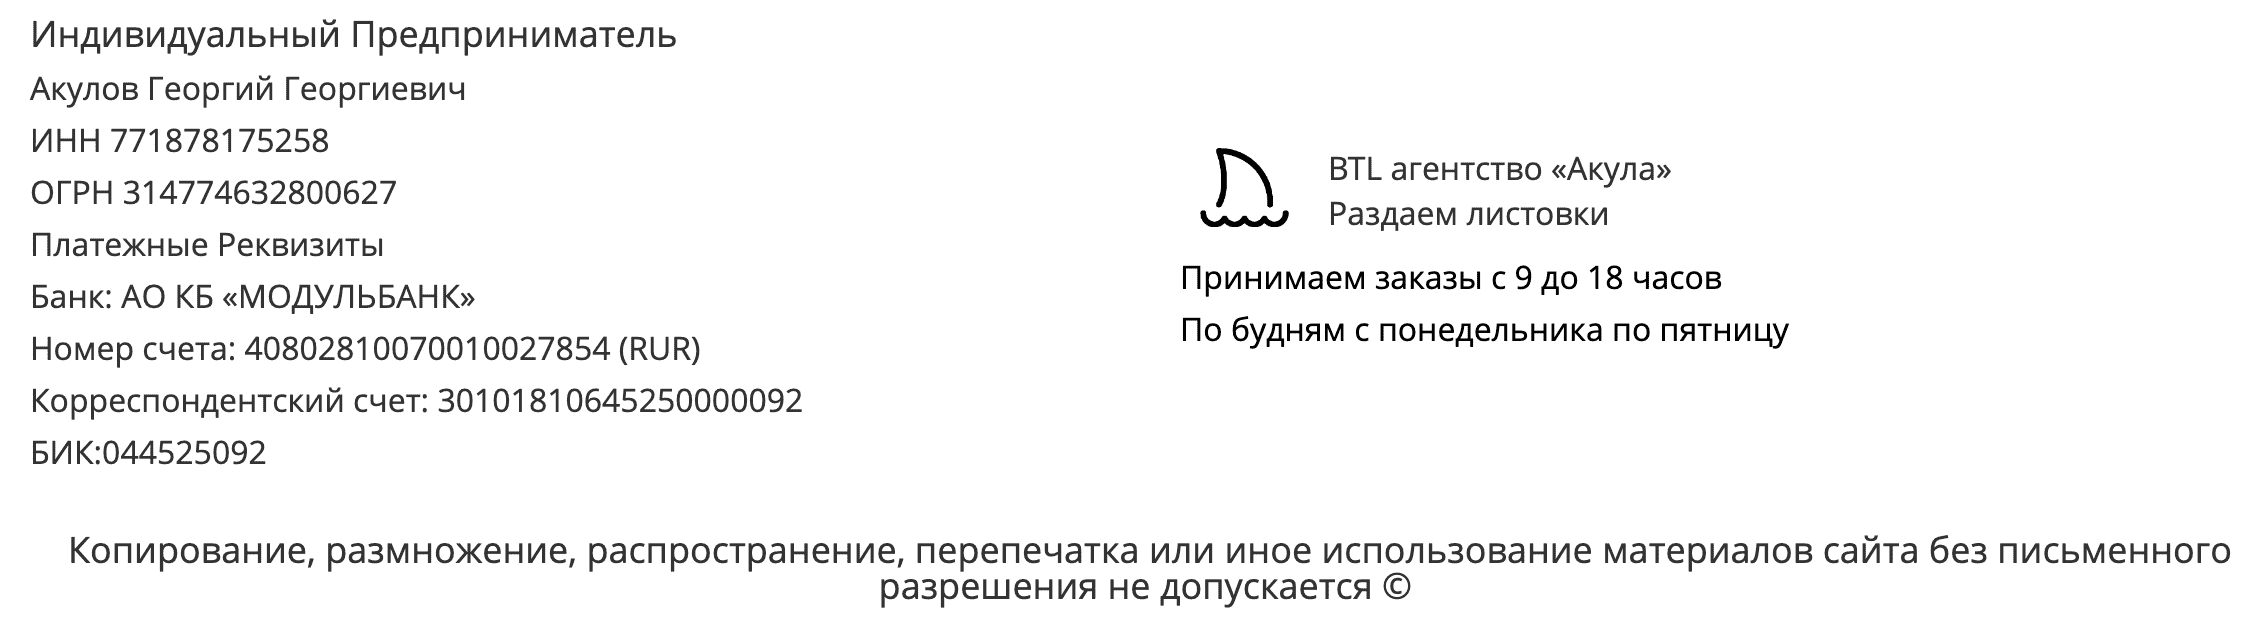 Реквизиты агентства по раздаче листовок Санкт-Петербург